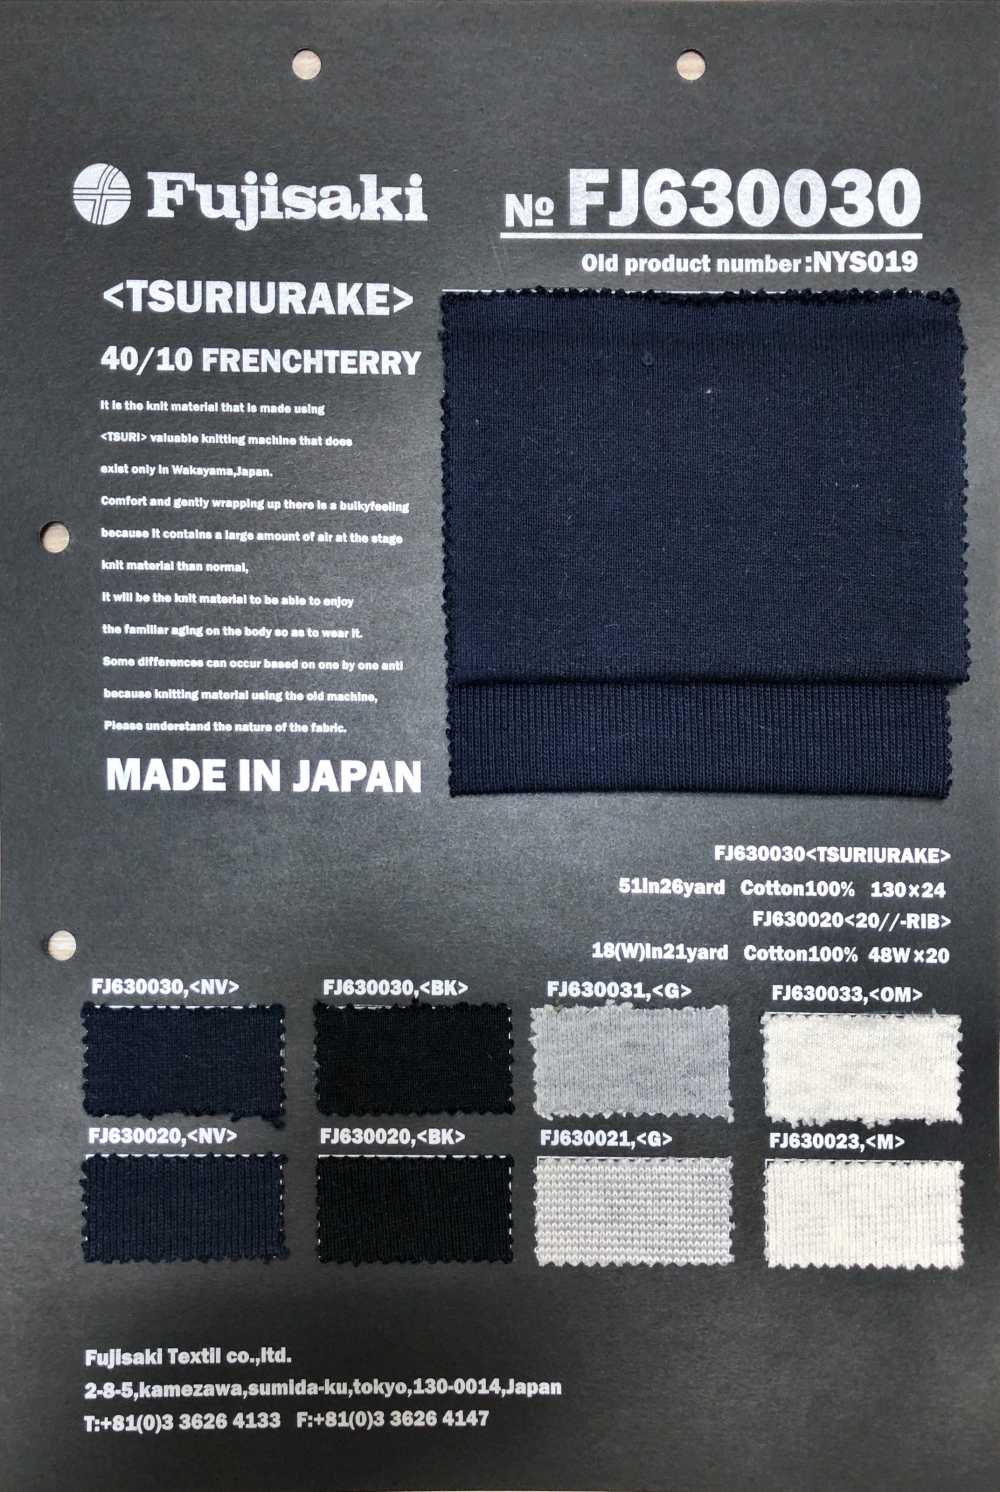 FJ630021 20//- Rib Knit Heather[Textile / Fabric] Fujisaki Textile